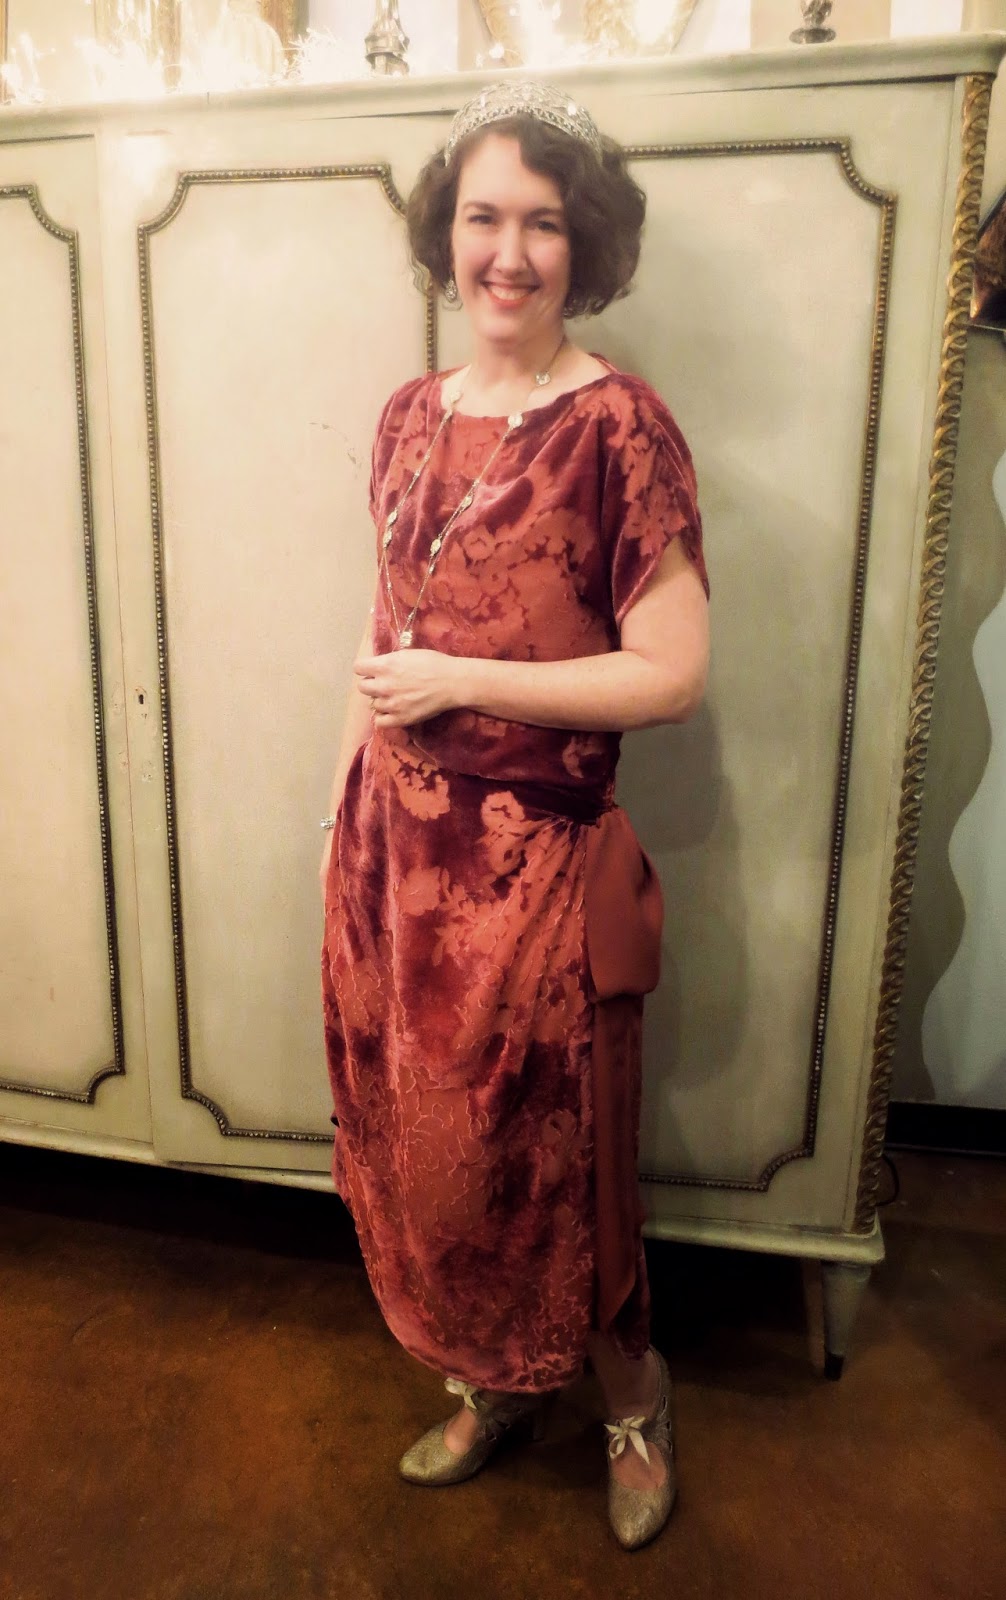 Festive Attyre: Downton-esque 1-hour dress